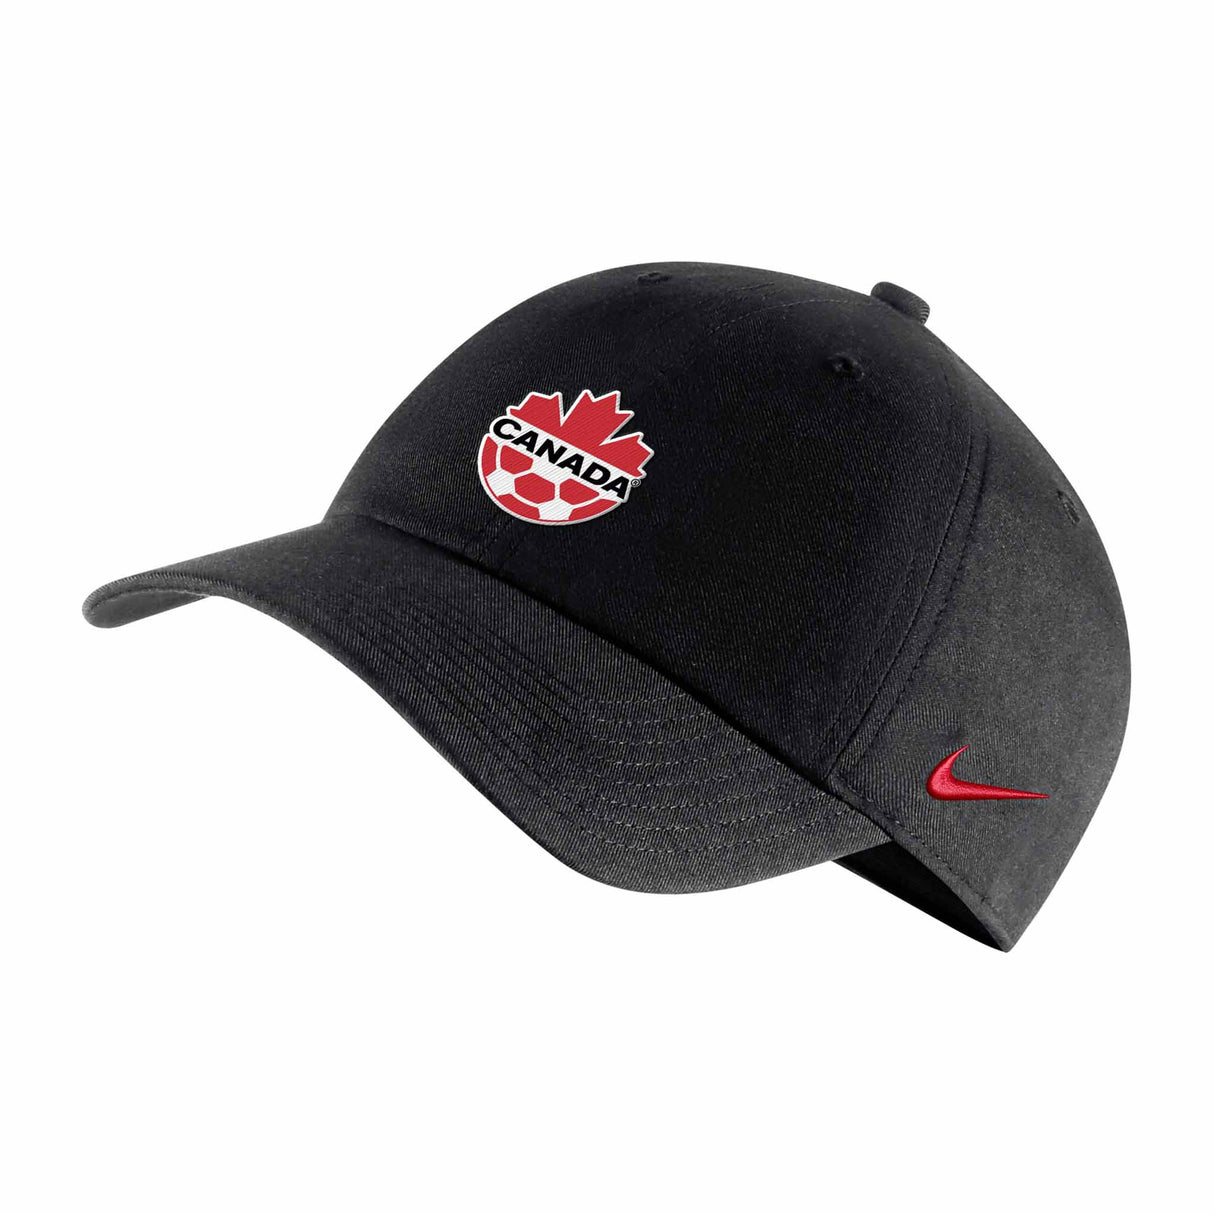 Nike Heritage 86 Soccer Canada casquette ajustable de l'équipe nationale canadienne - Noir